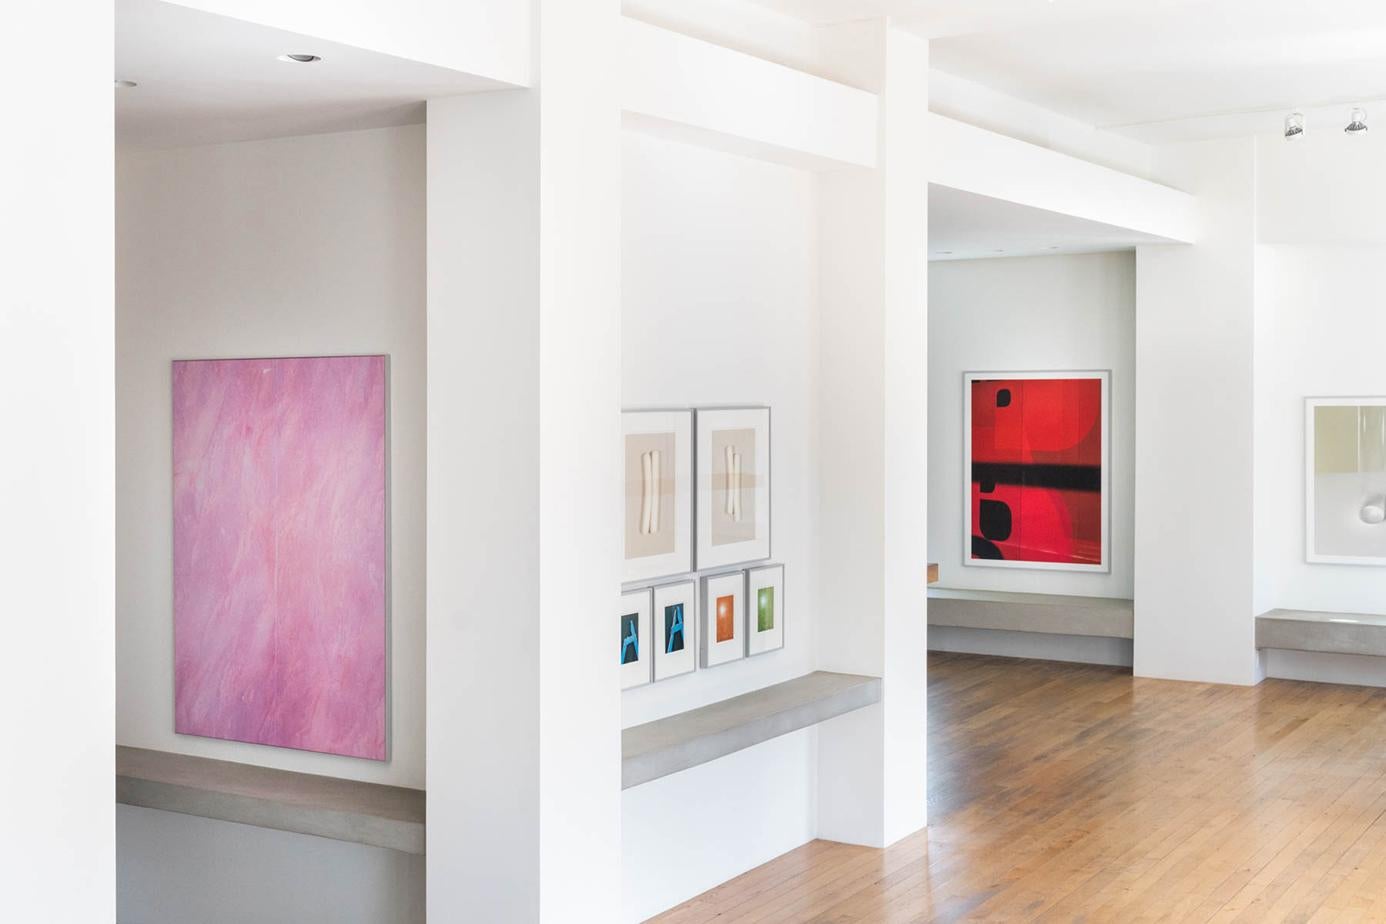 Rotes Fenster (künstlerisch gerahmt) – abstrakte, monochrome Fotografie in großem Maßstab  (Abstrakt), Photograph, von Raymond Meier